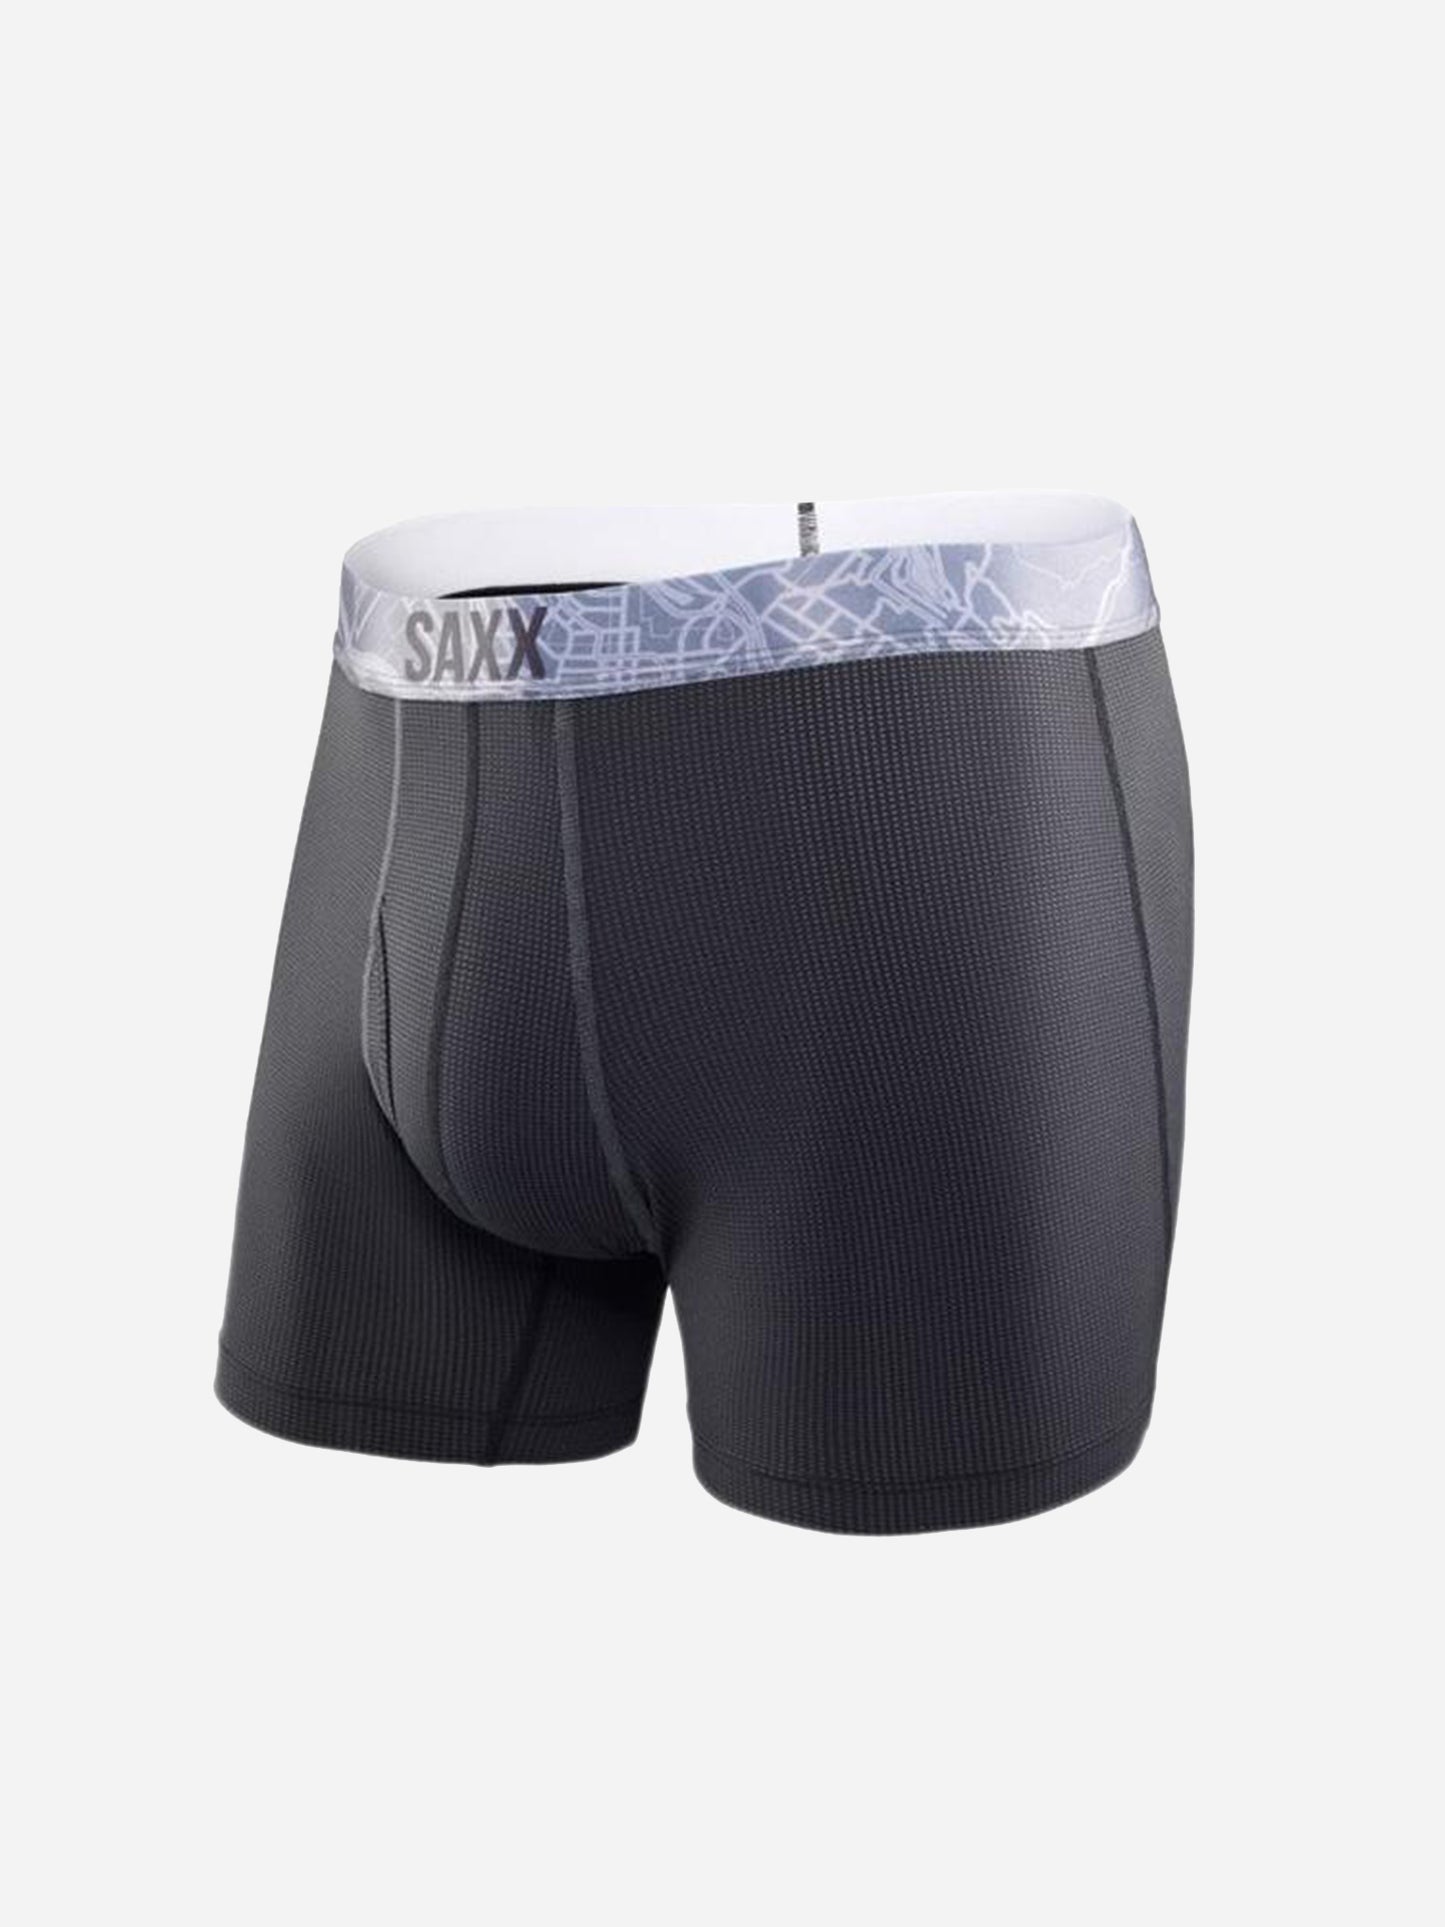 Saxx Underwear Quest 2.0 Boxer Brief